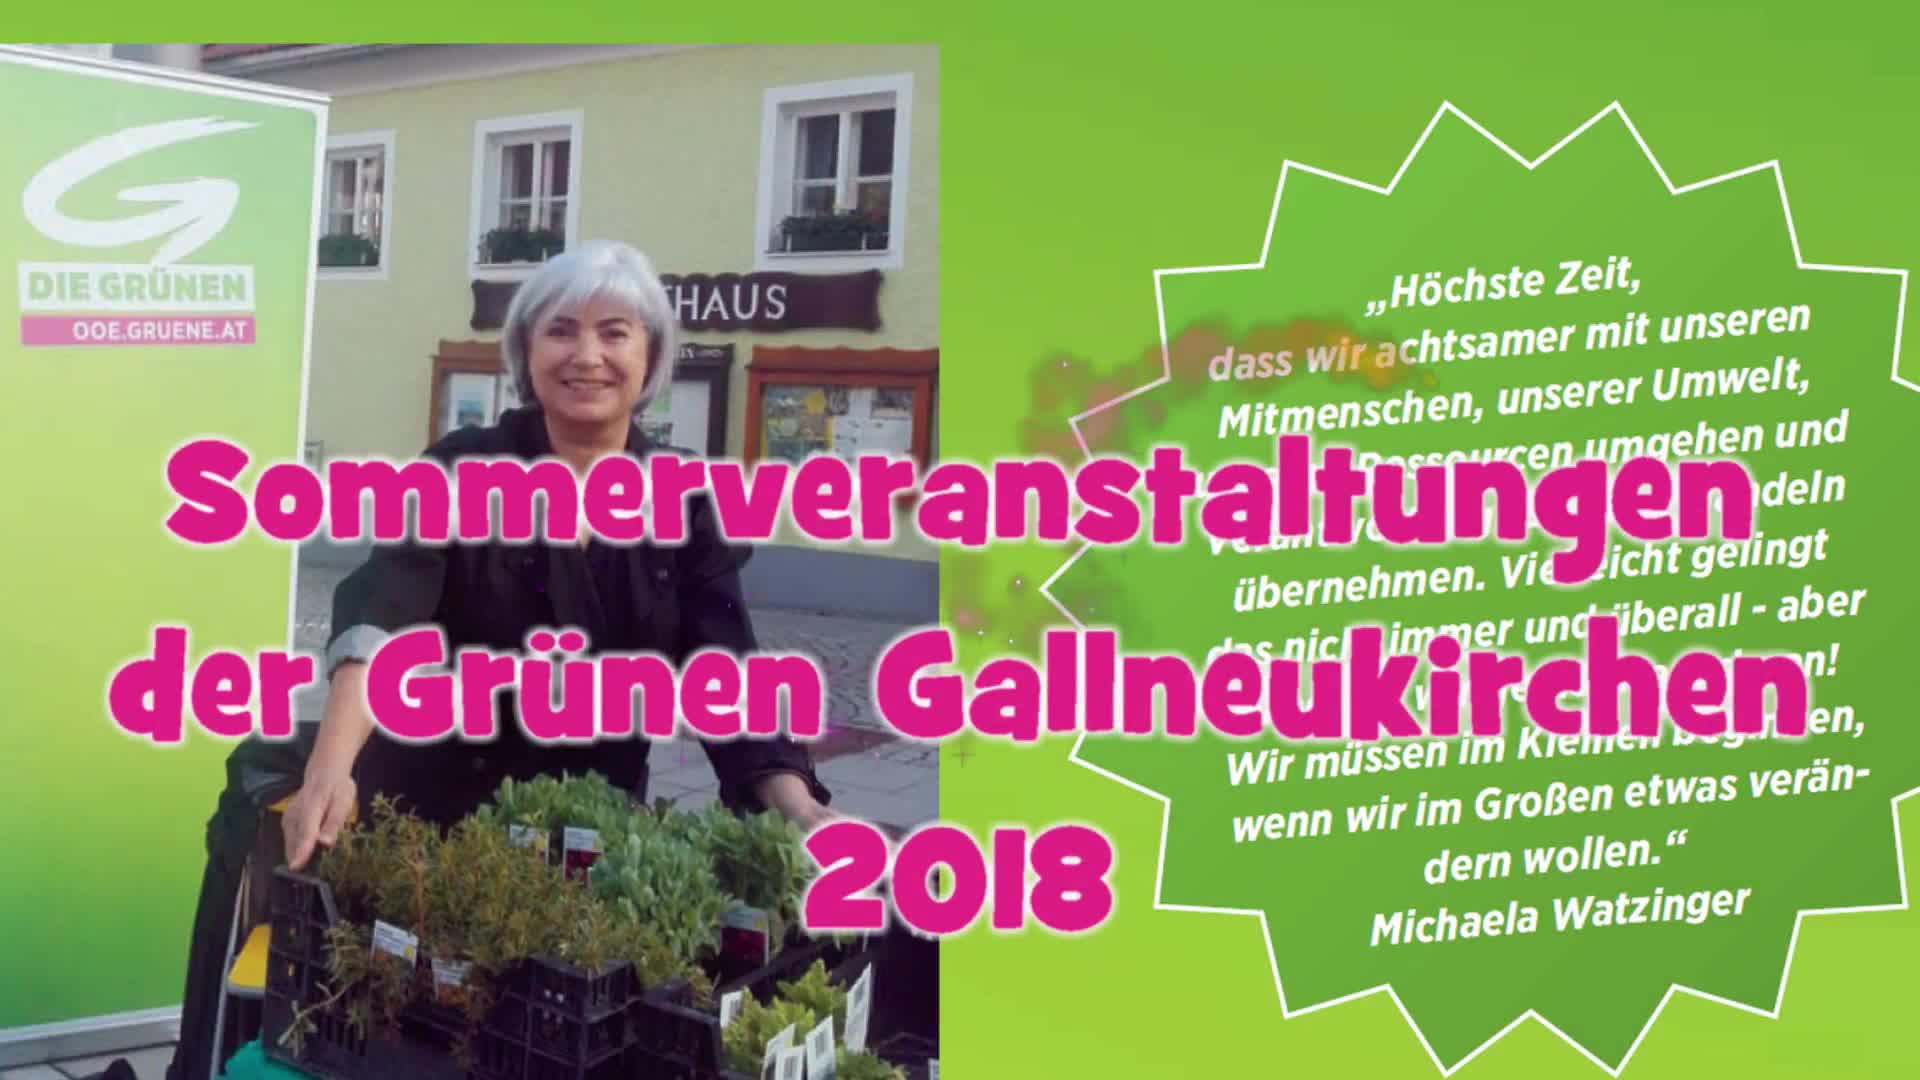 Sommerveranstaltungen der Grünen Gallneukirchen 2018